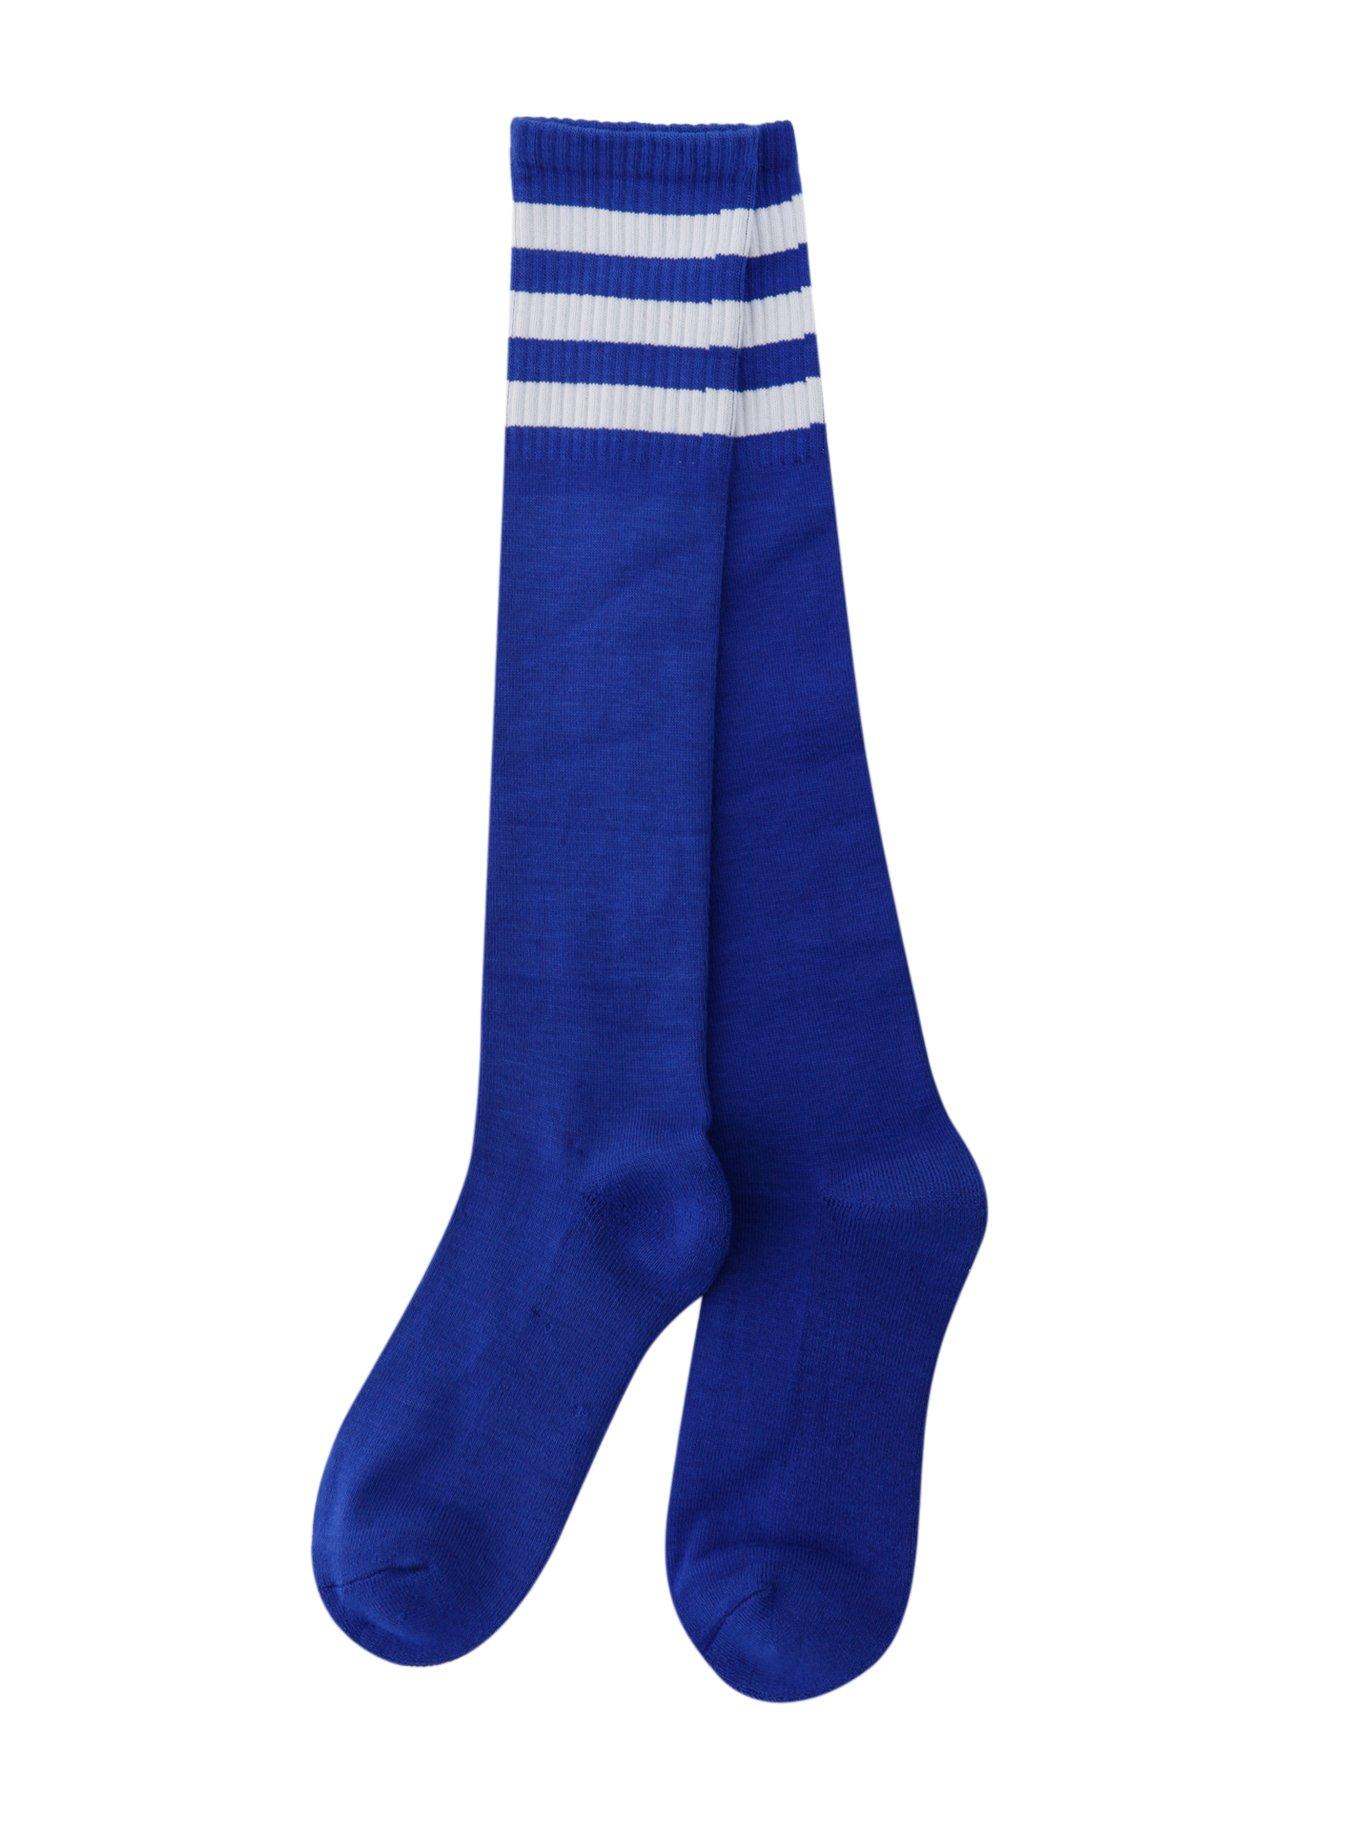 Blue And White Knee-High Crew Socks, , alternate